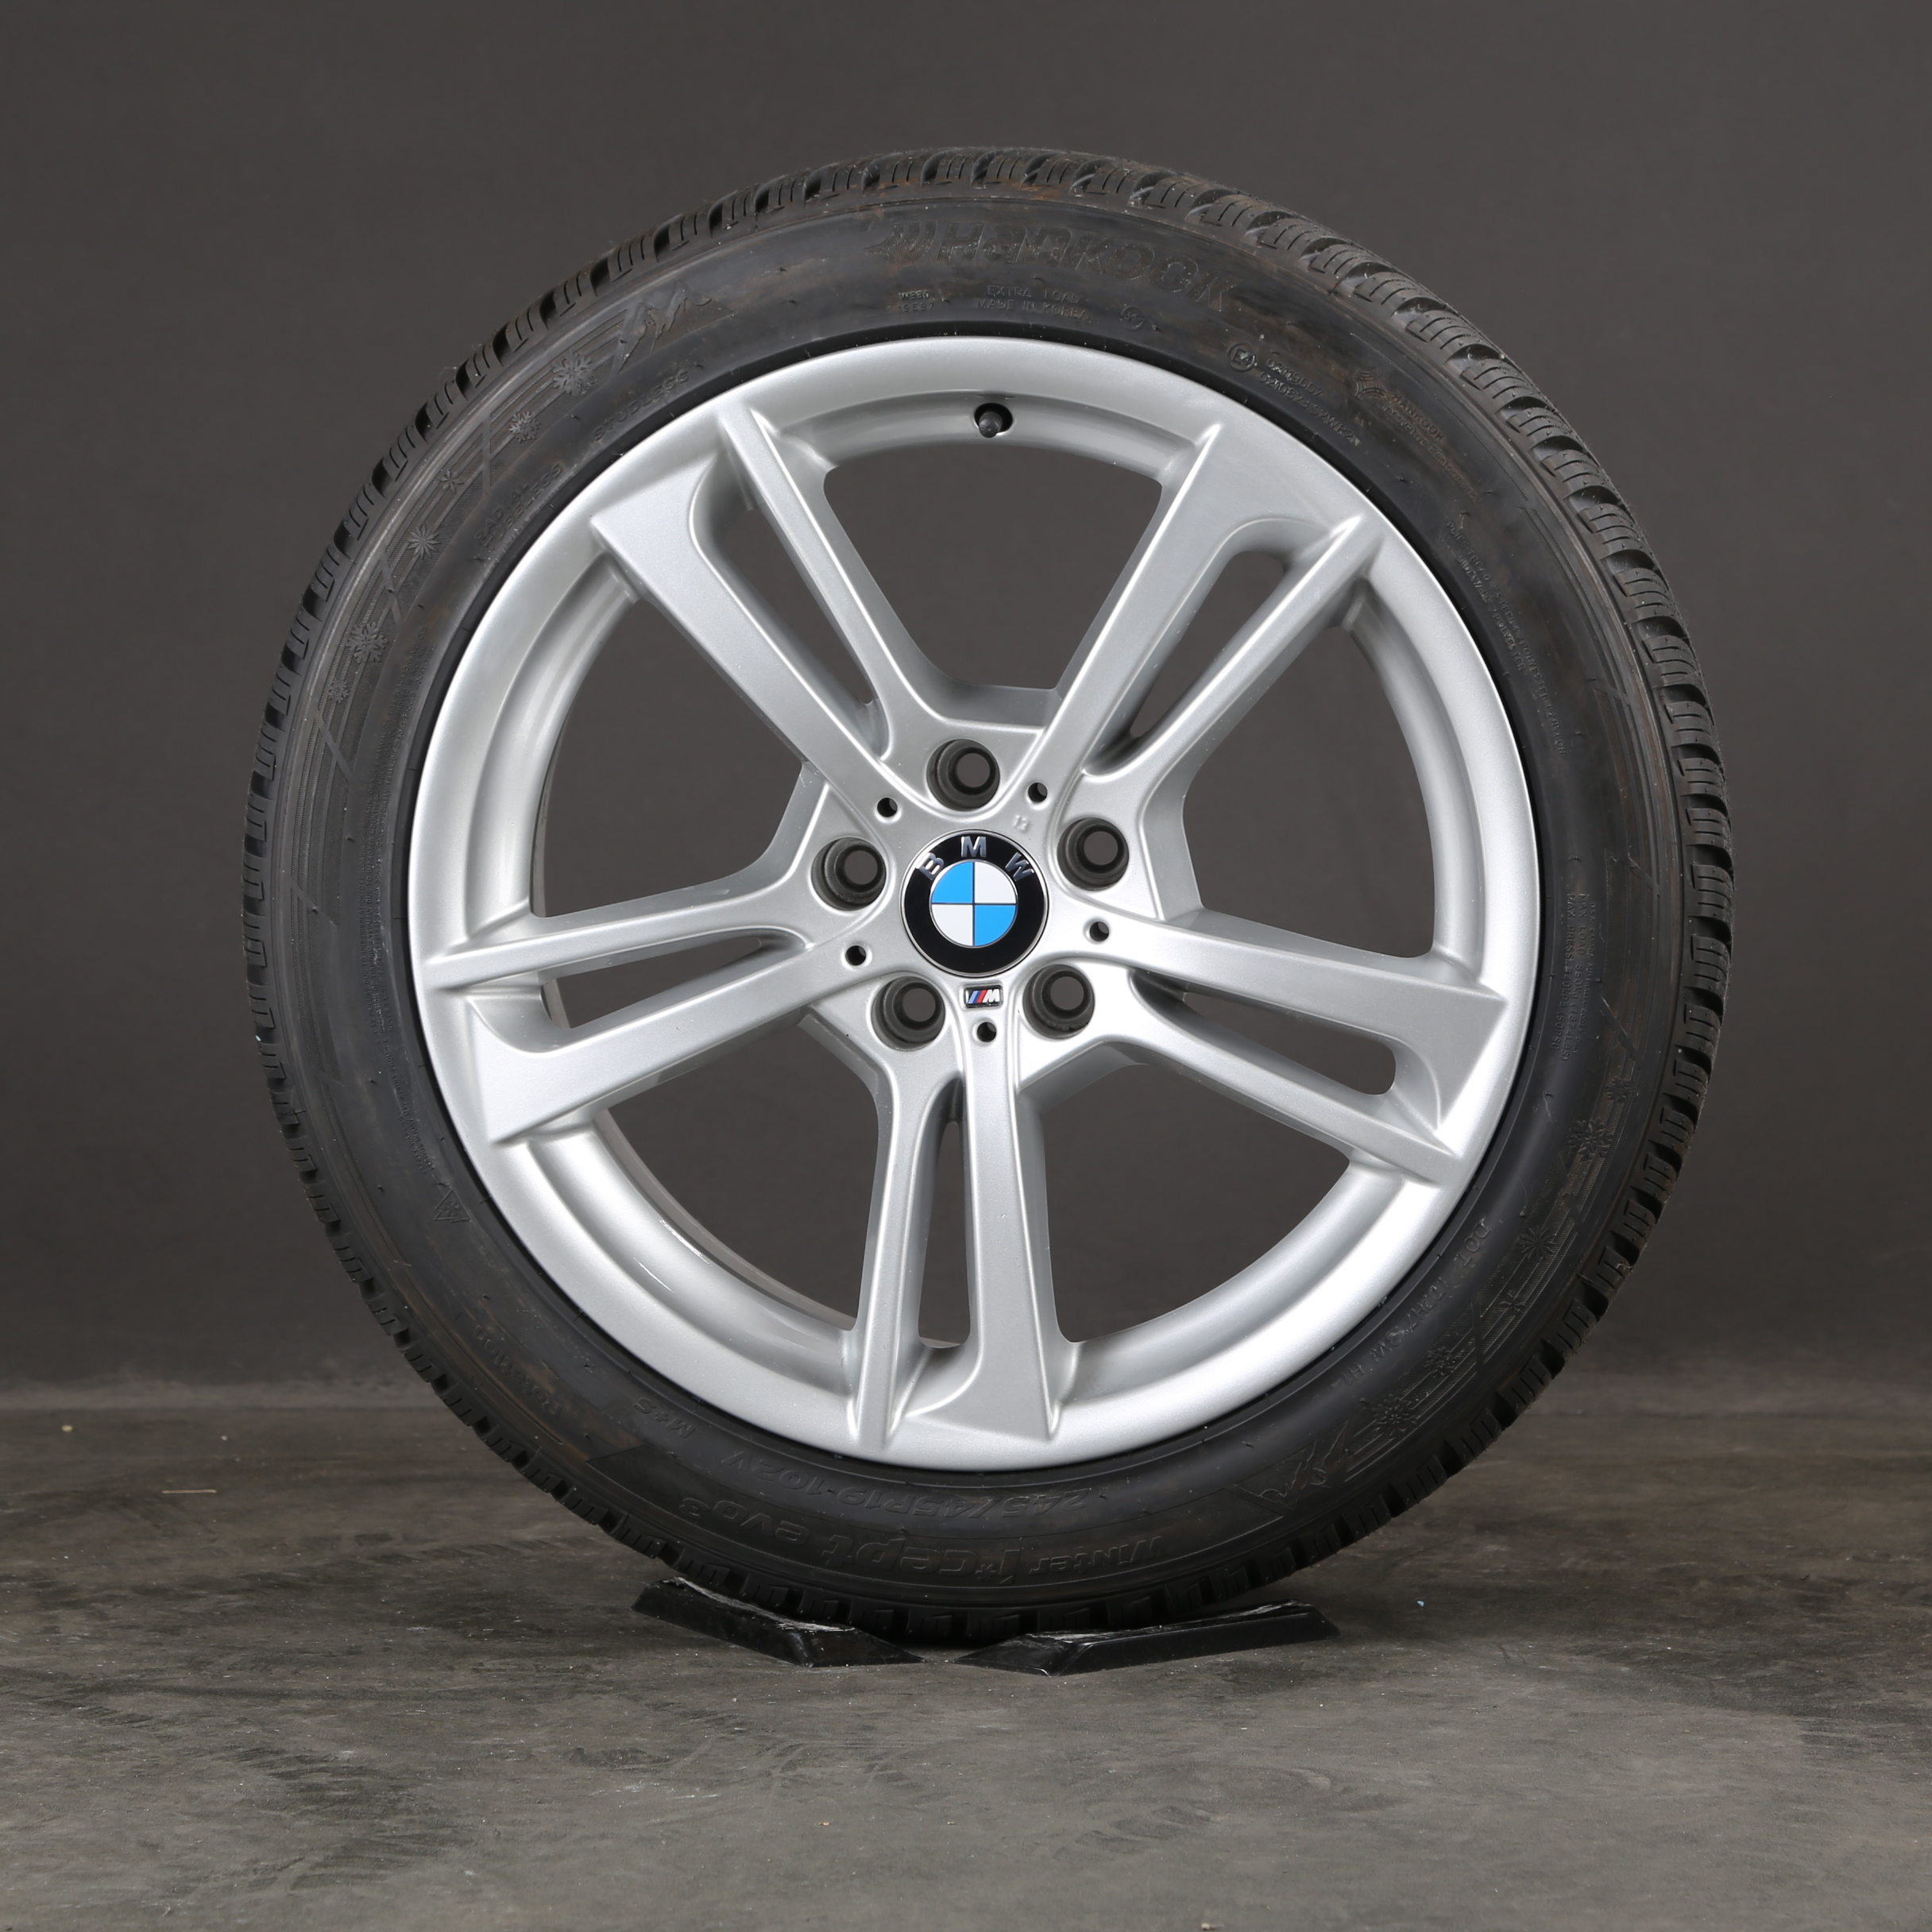 19 pouces roues d'hiver d'origine BMW X4 F26 X3 F25 M369 jantes pneus d'hiver